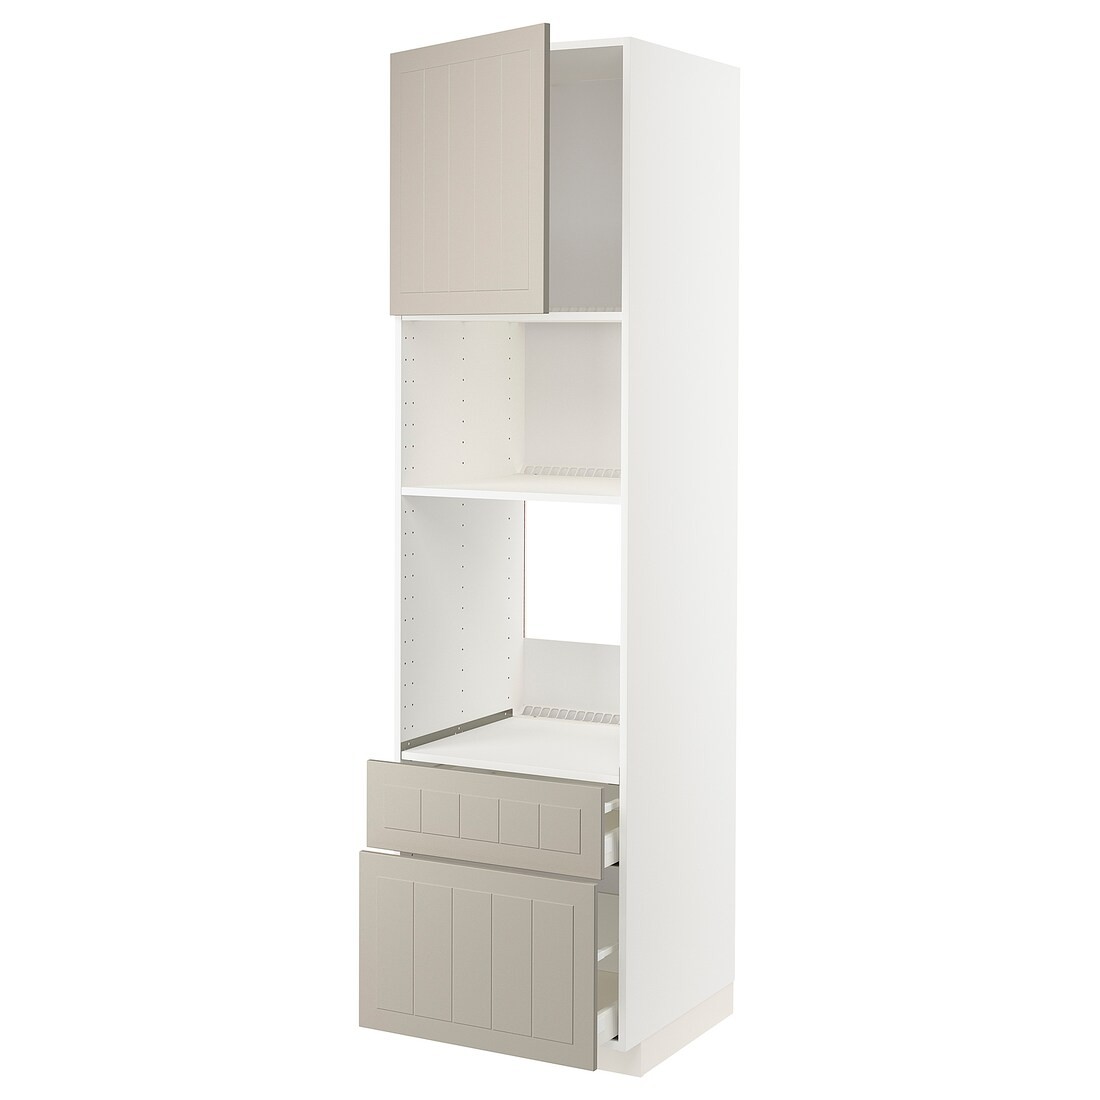 IKEA METOD МЕТОД / MAXIMERA МАКСИМЕРА Высокий шкаф для духовки / микроволновки с дверями / 2 ящиками, белый / Stensund бежевый, 60x60x220 см 99456307 | 994.563.07